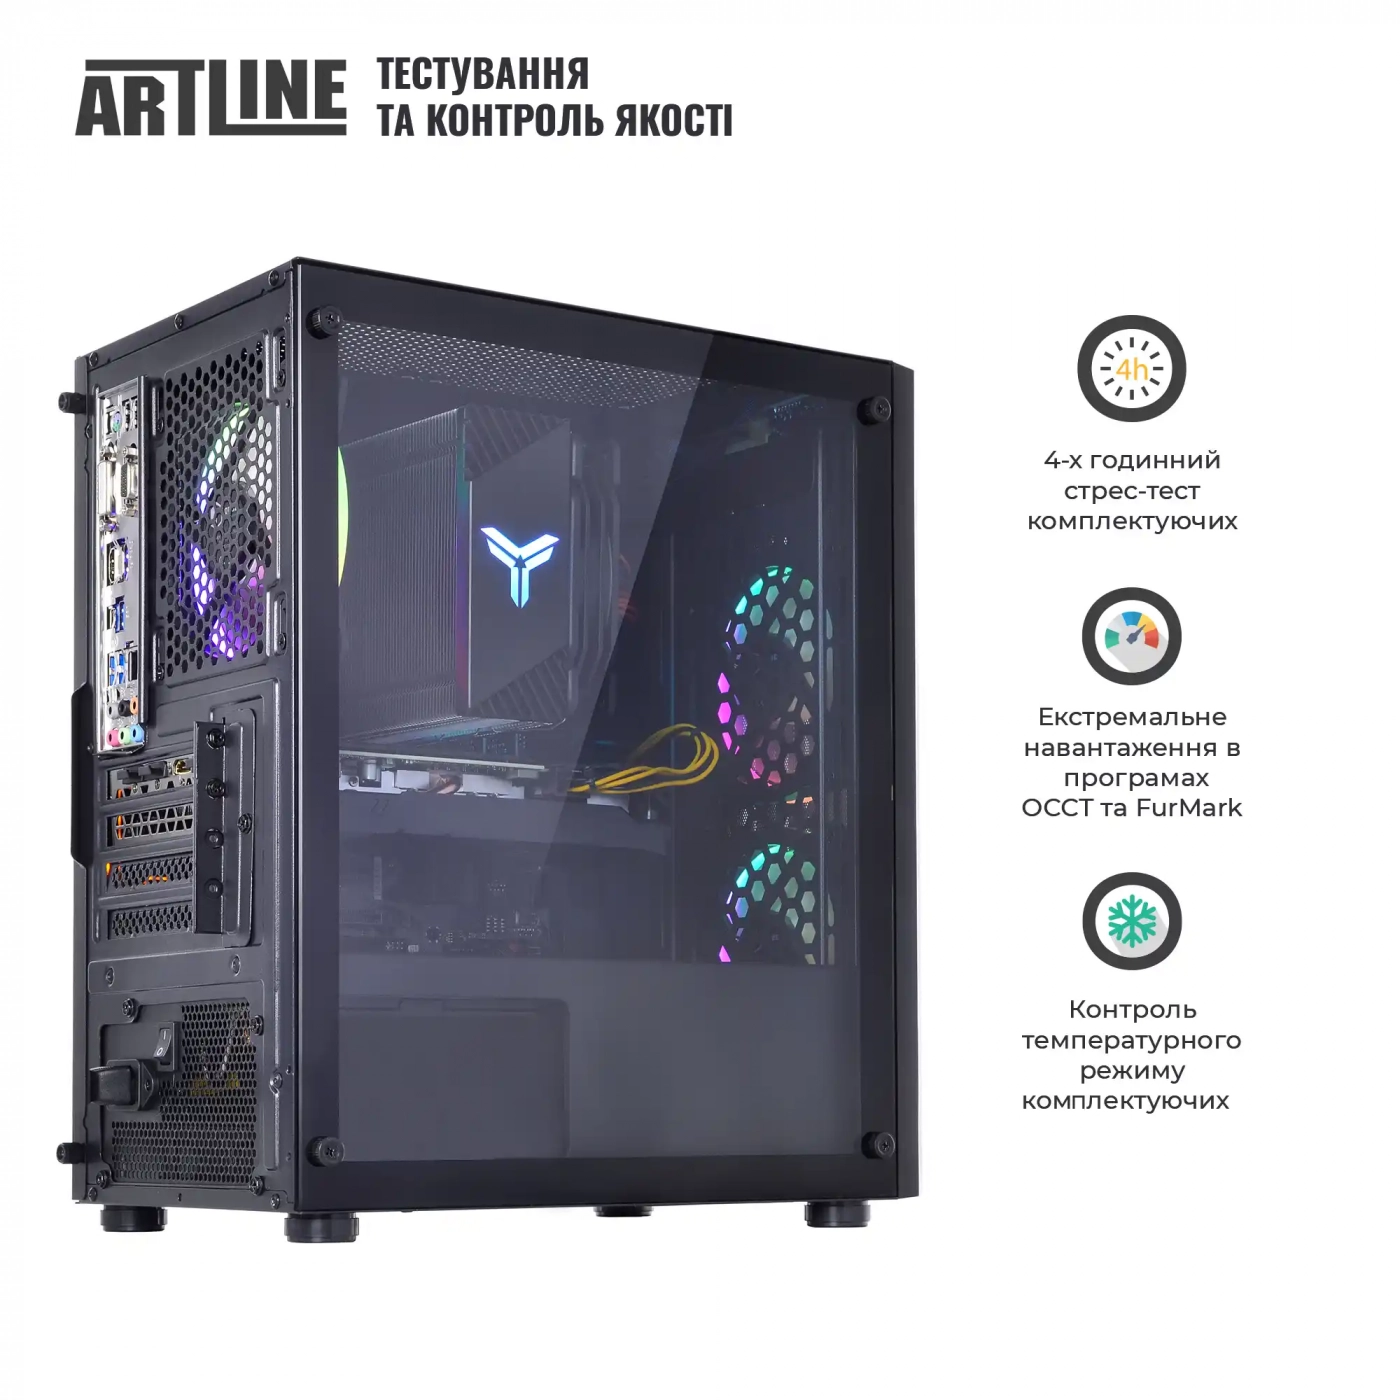 Купить Компьютер ARTLINE Gaming X39v67 - фото 7